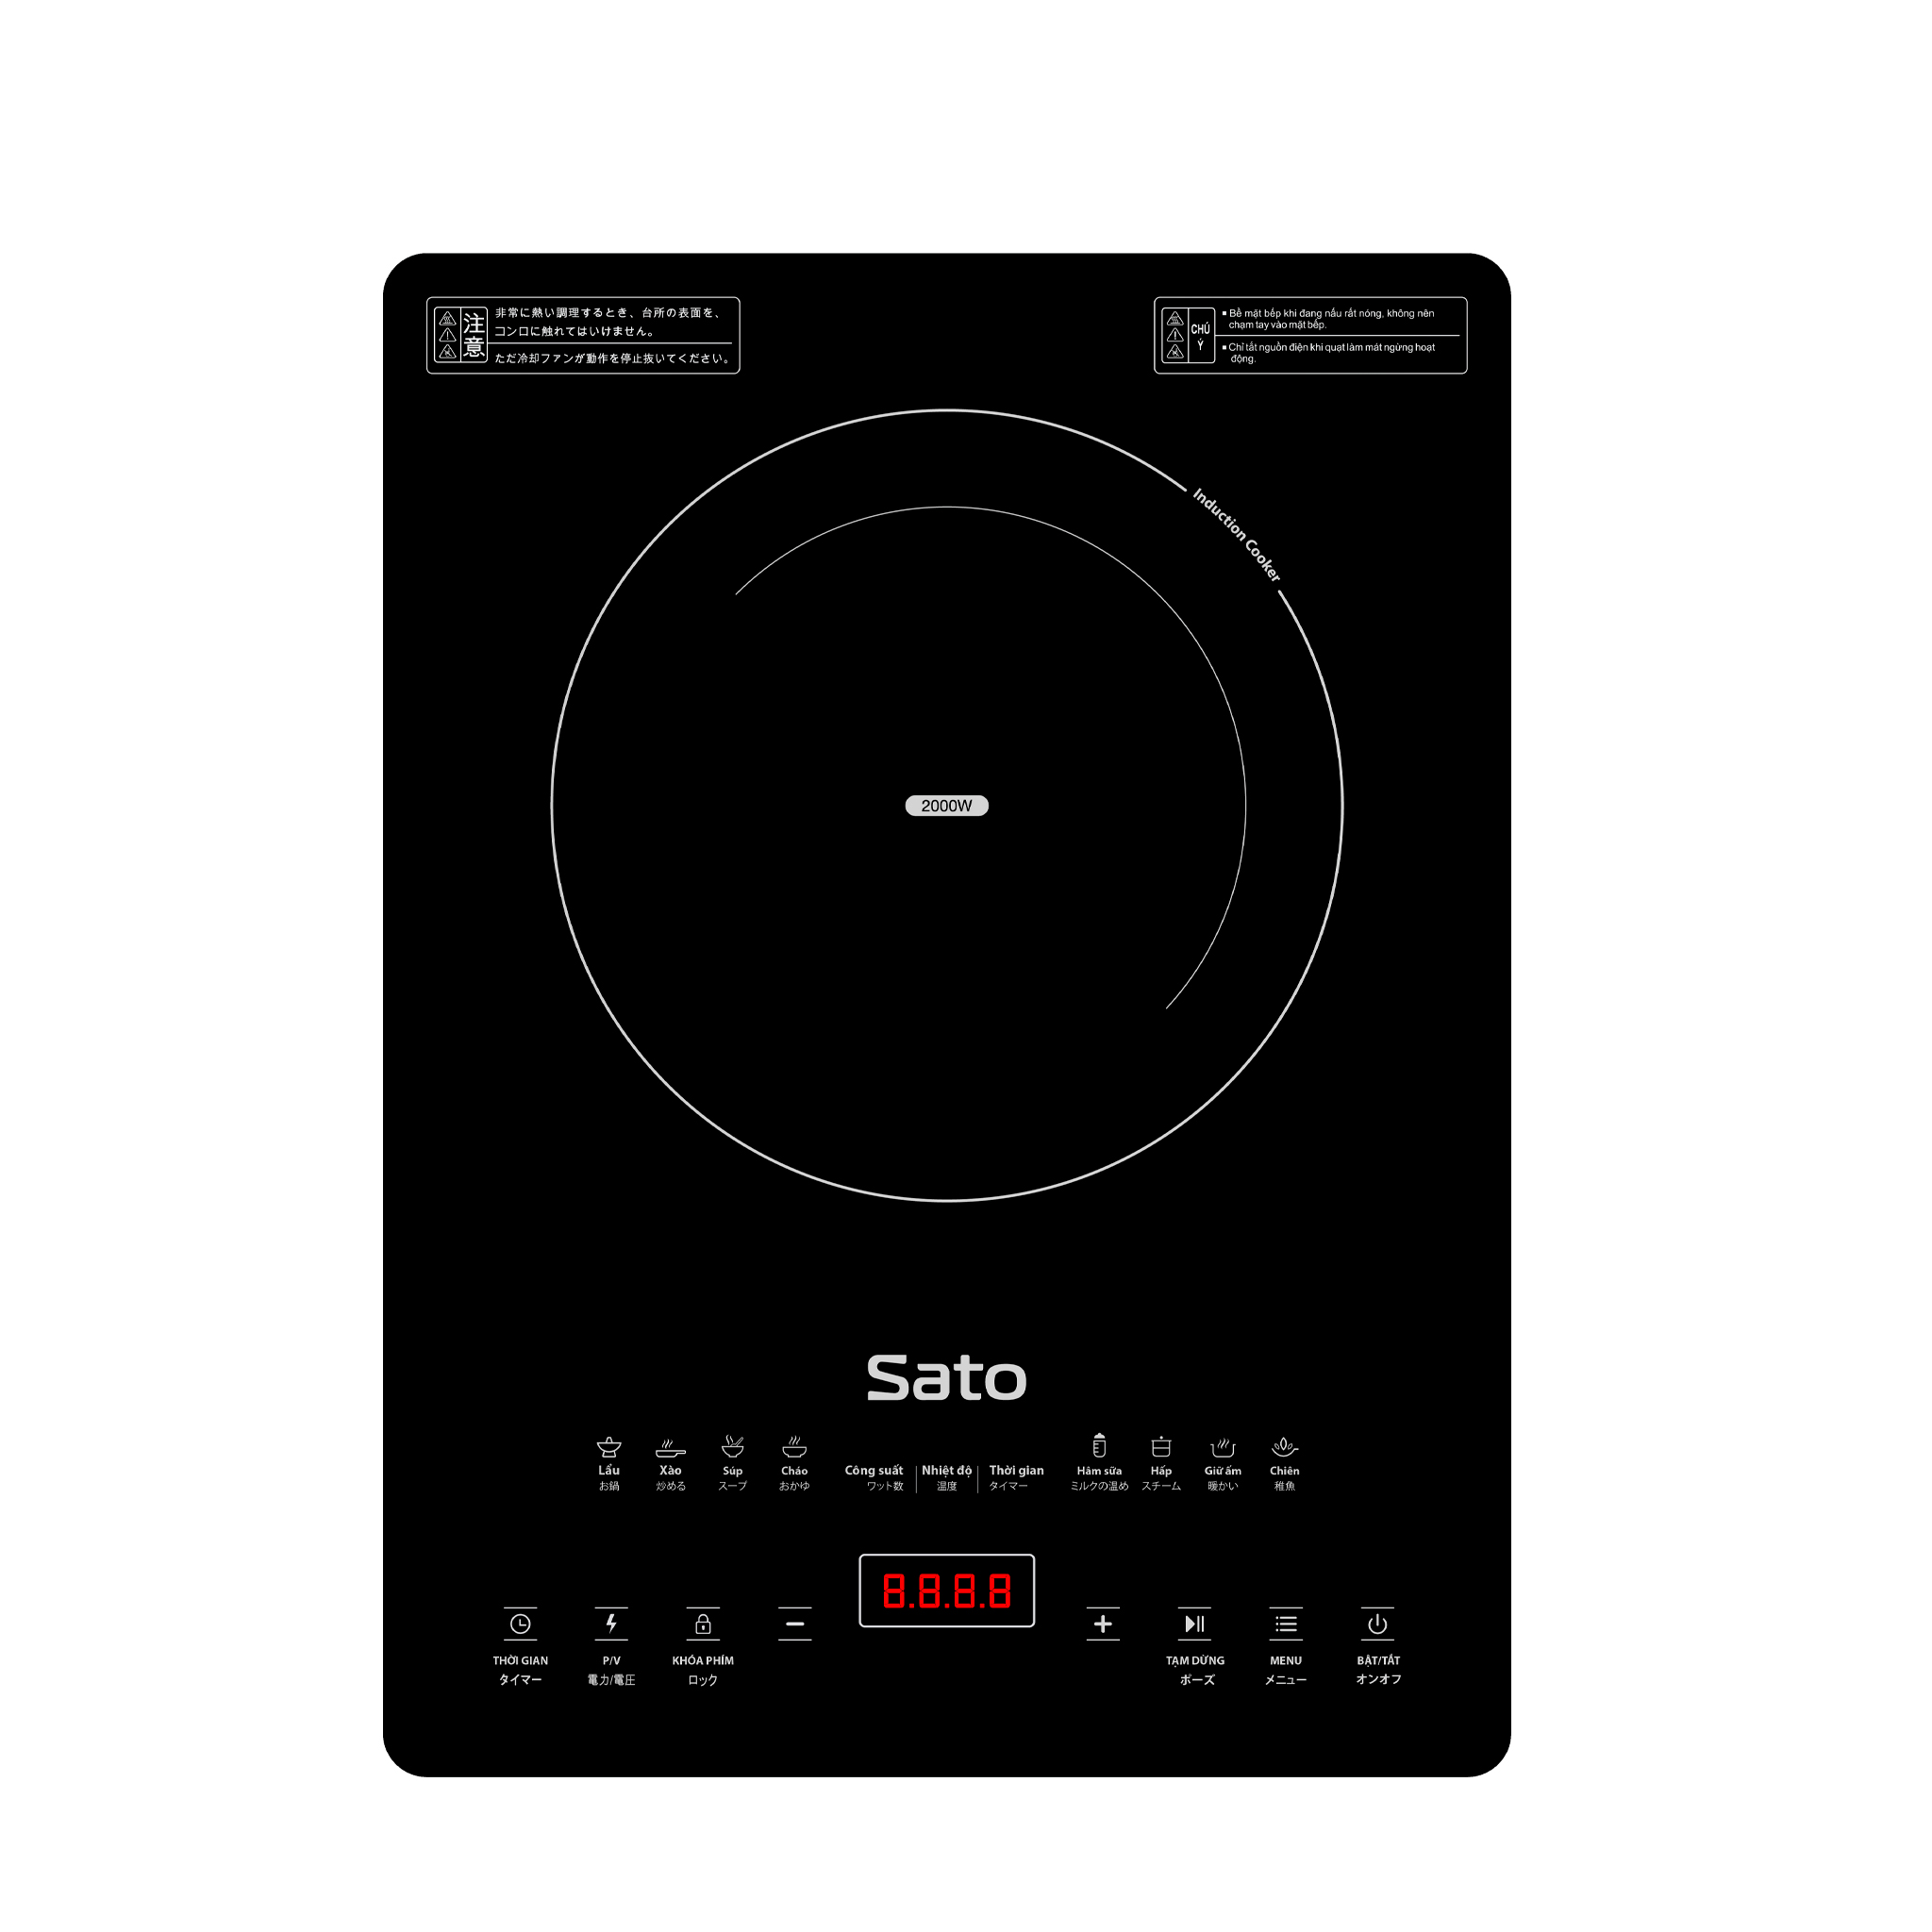 Bếp từ đơn Sato BT081 - Mặt kính cường lực cao cấp chống xước, chịu nhiệt lên tới 750 °C độ bền cao và an toàn tuyệt đối - Miễn phí vận chuyển toàn quốc - Hàng chính hãng